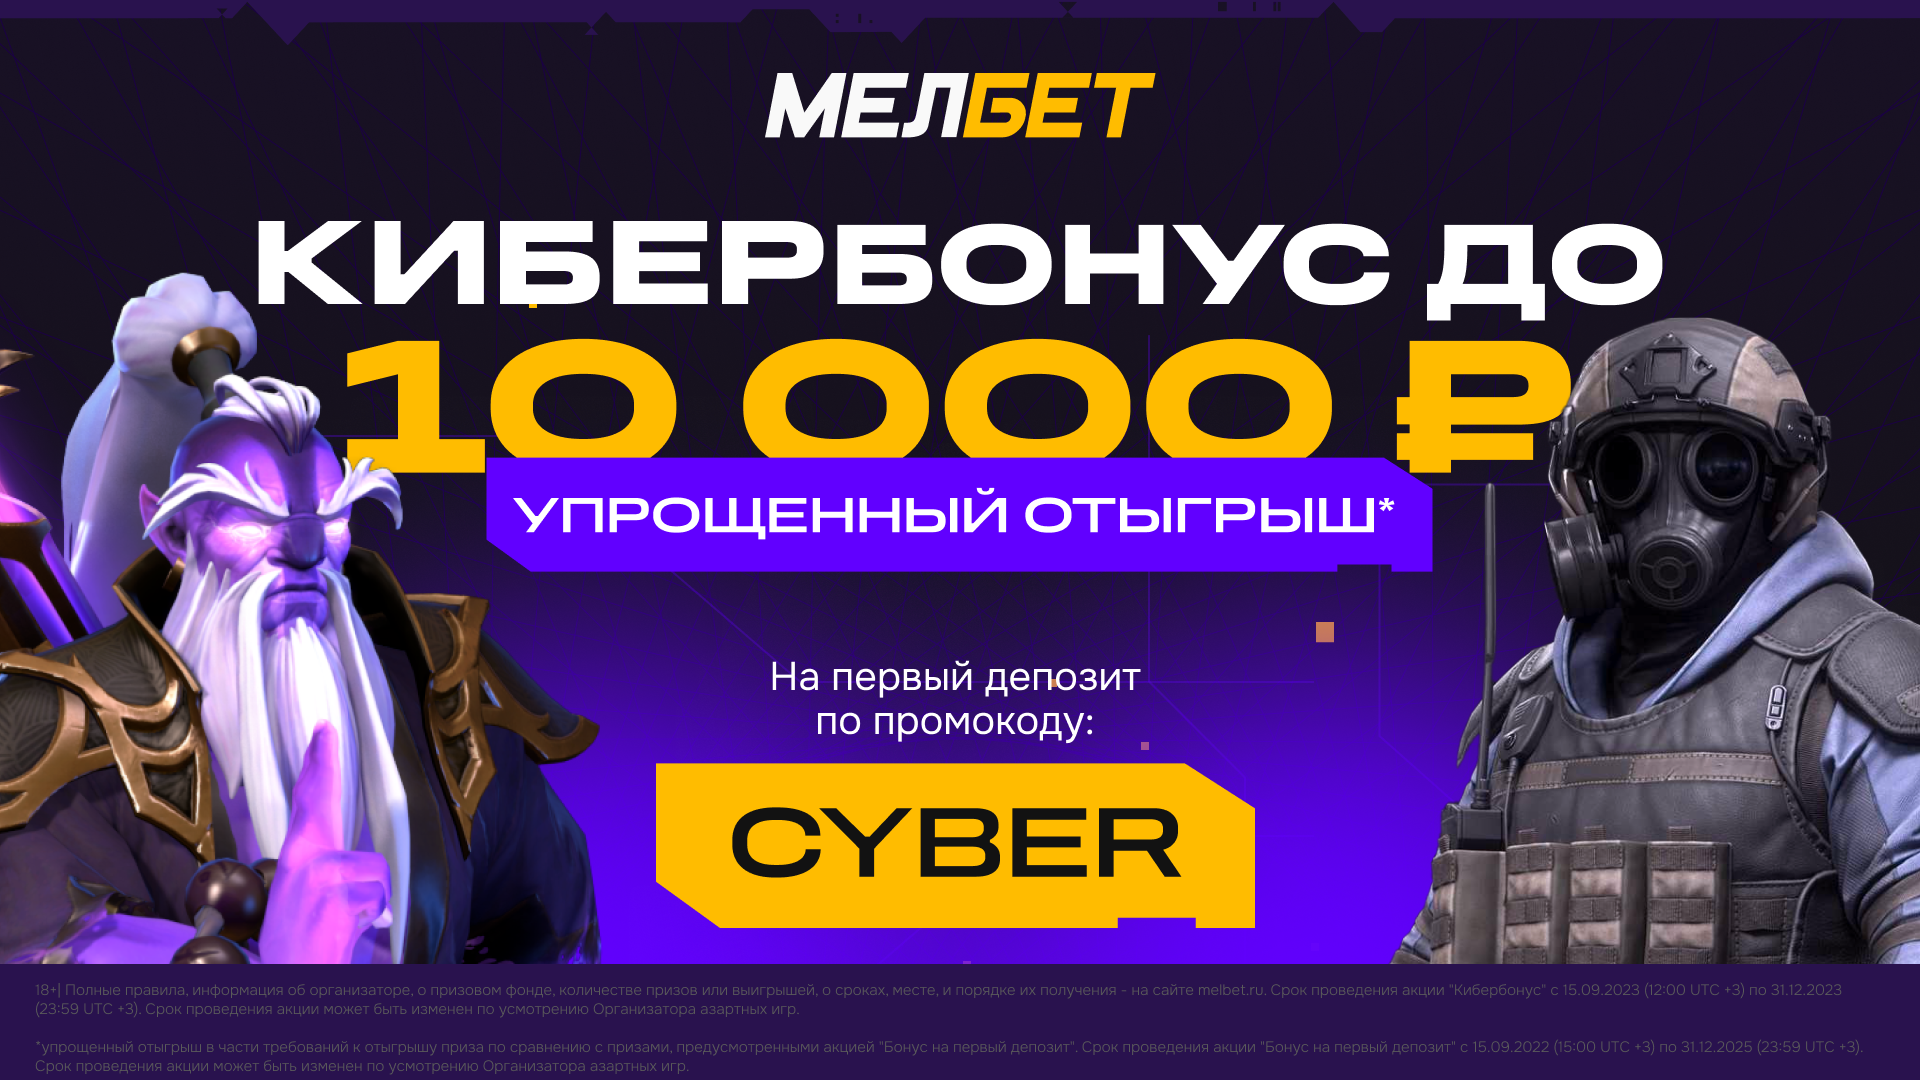 Эксклюзивный КиберБонус до 10 000 рублей от БК “Мелбет”